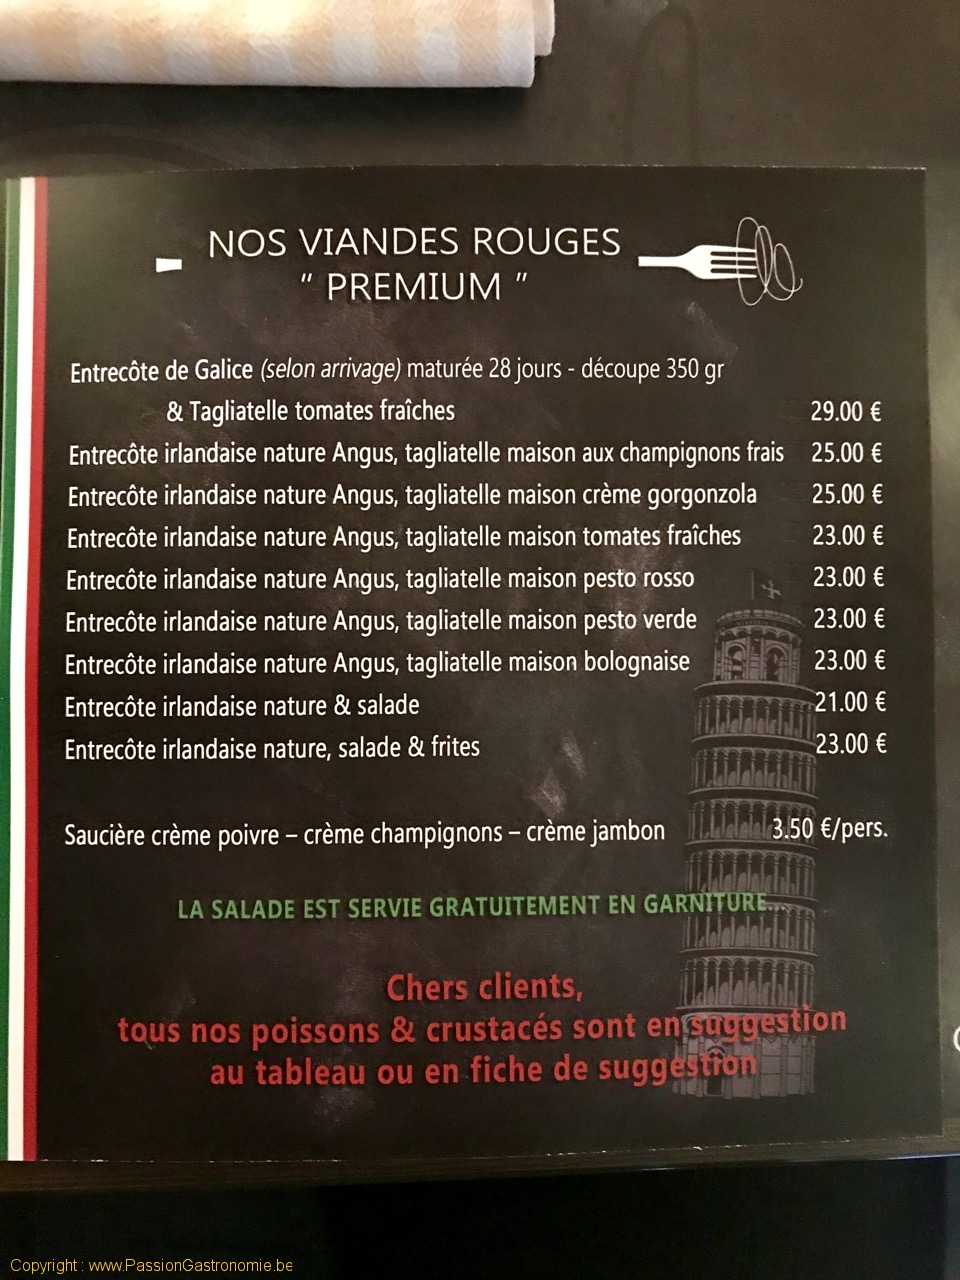 Restaurant Ciccio - Les viandes rouges premium